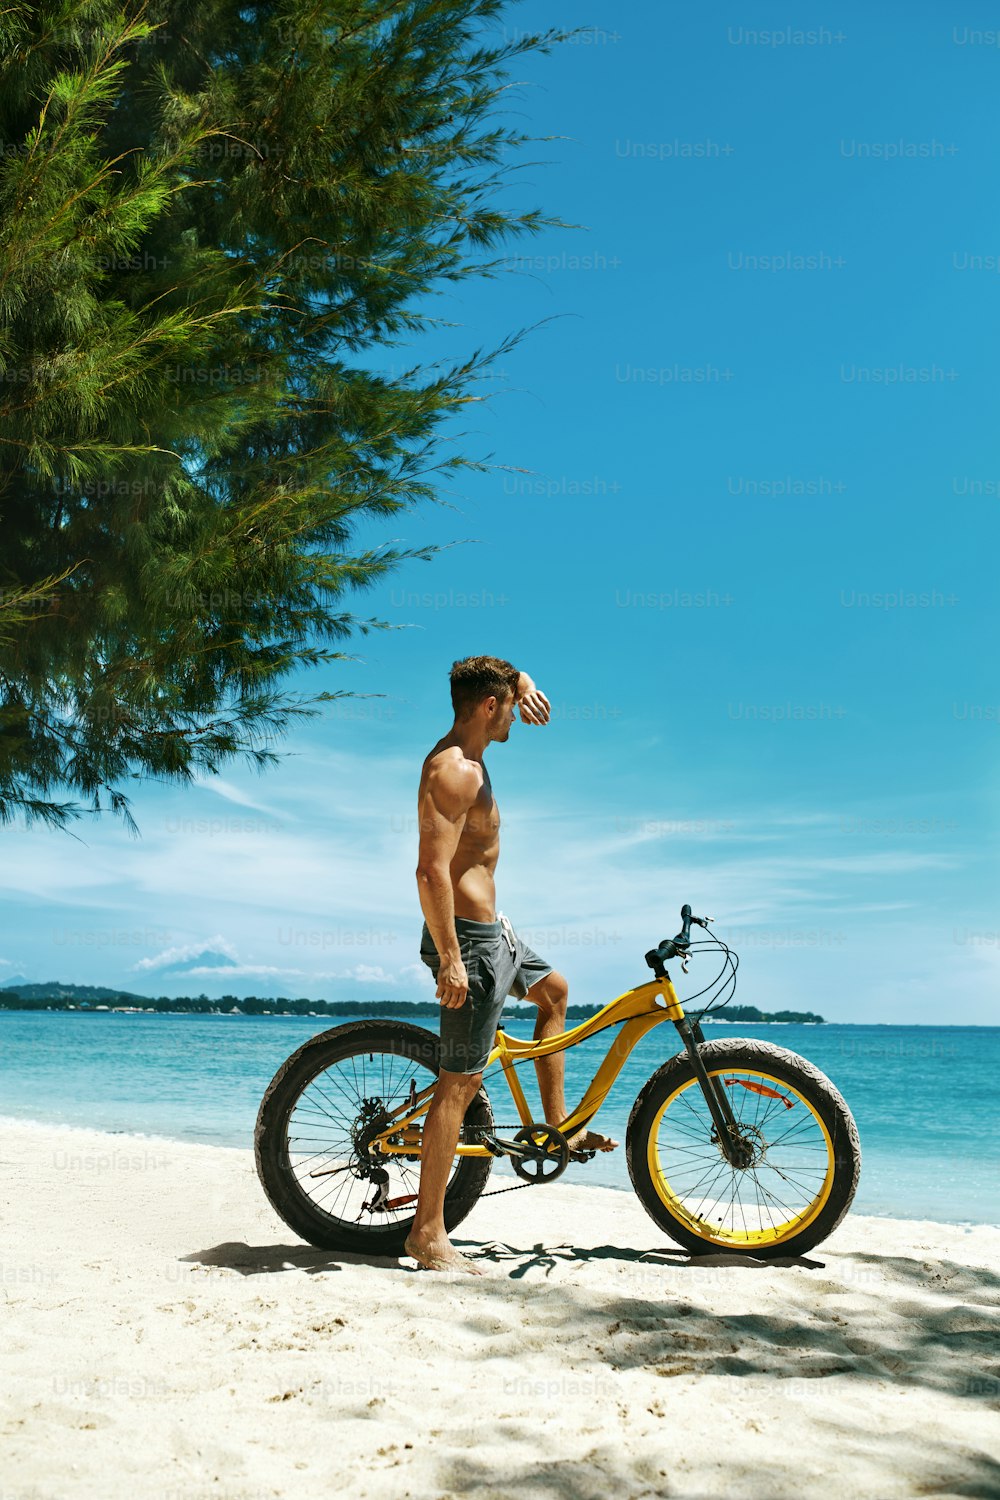 夏のビーチスポーツ。熱帯の海辺で黄色い砂の自転車に乗る筋肉質の体を持つ運動選手。休日の旅行休暇に自転車を持つフィットネス男性モデル。スポーツ活動、アクティブなライフスタイルのコンセプト